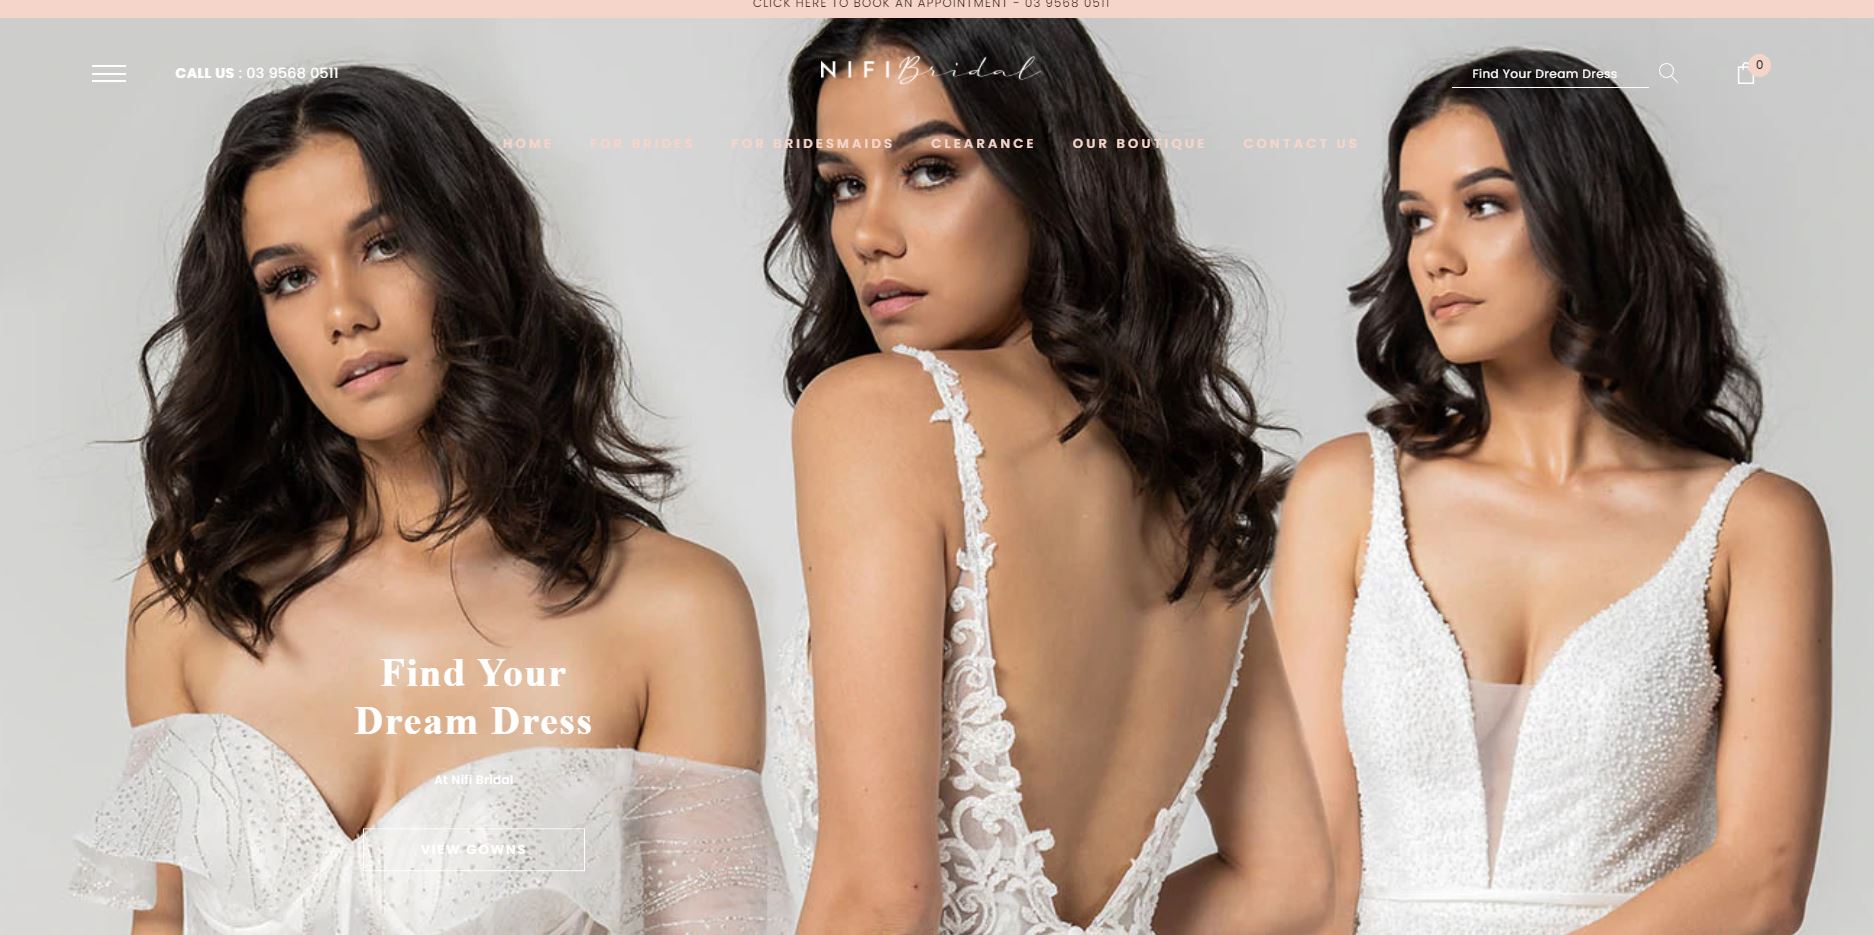 Nifi Bridal Affordable Wedding Dress Shops Melbourne